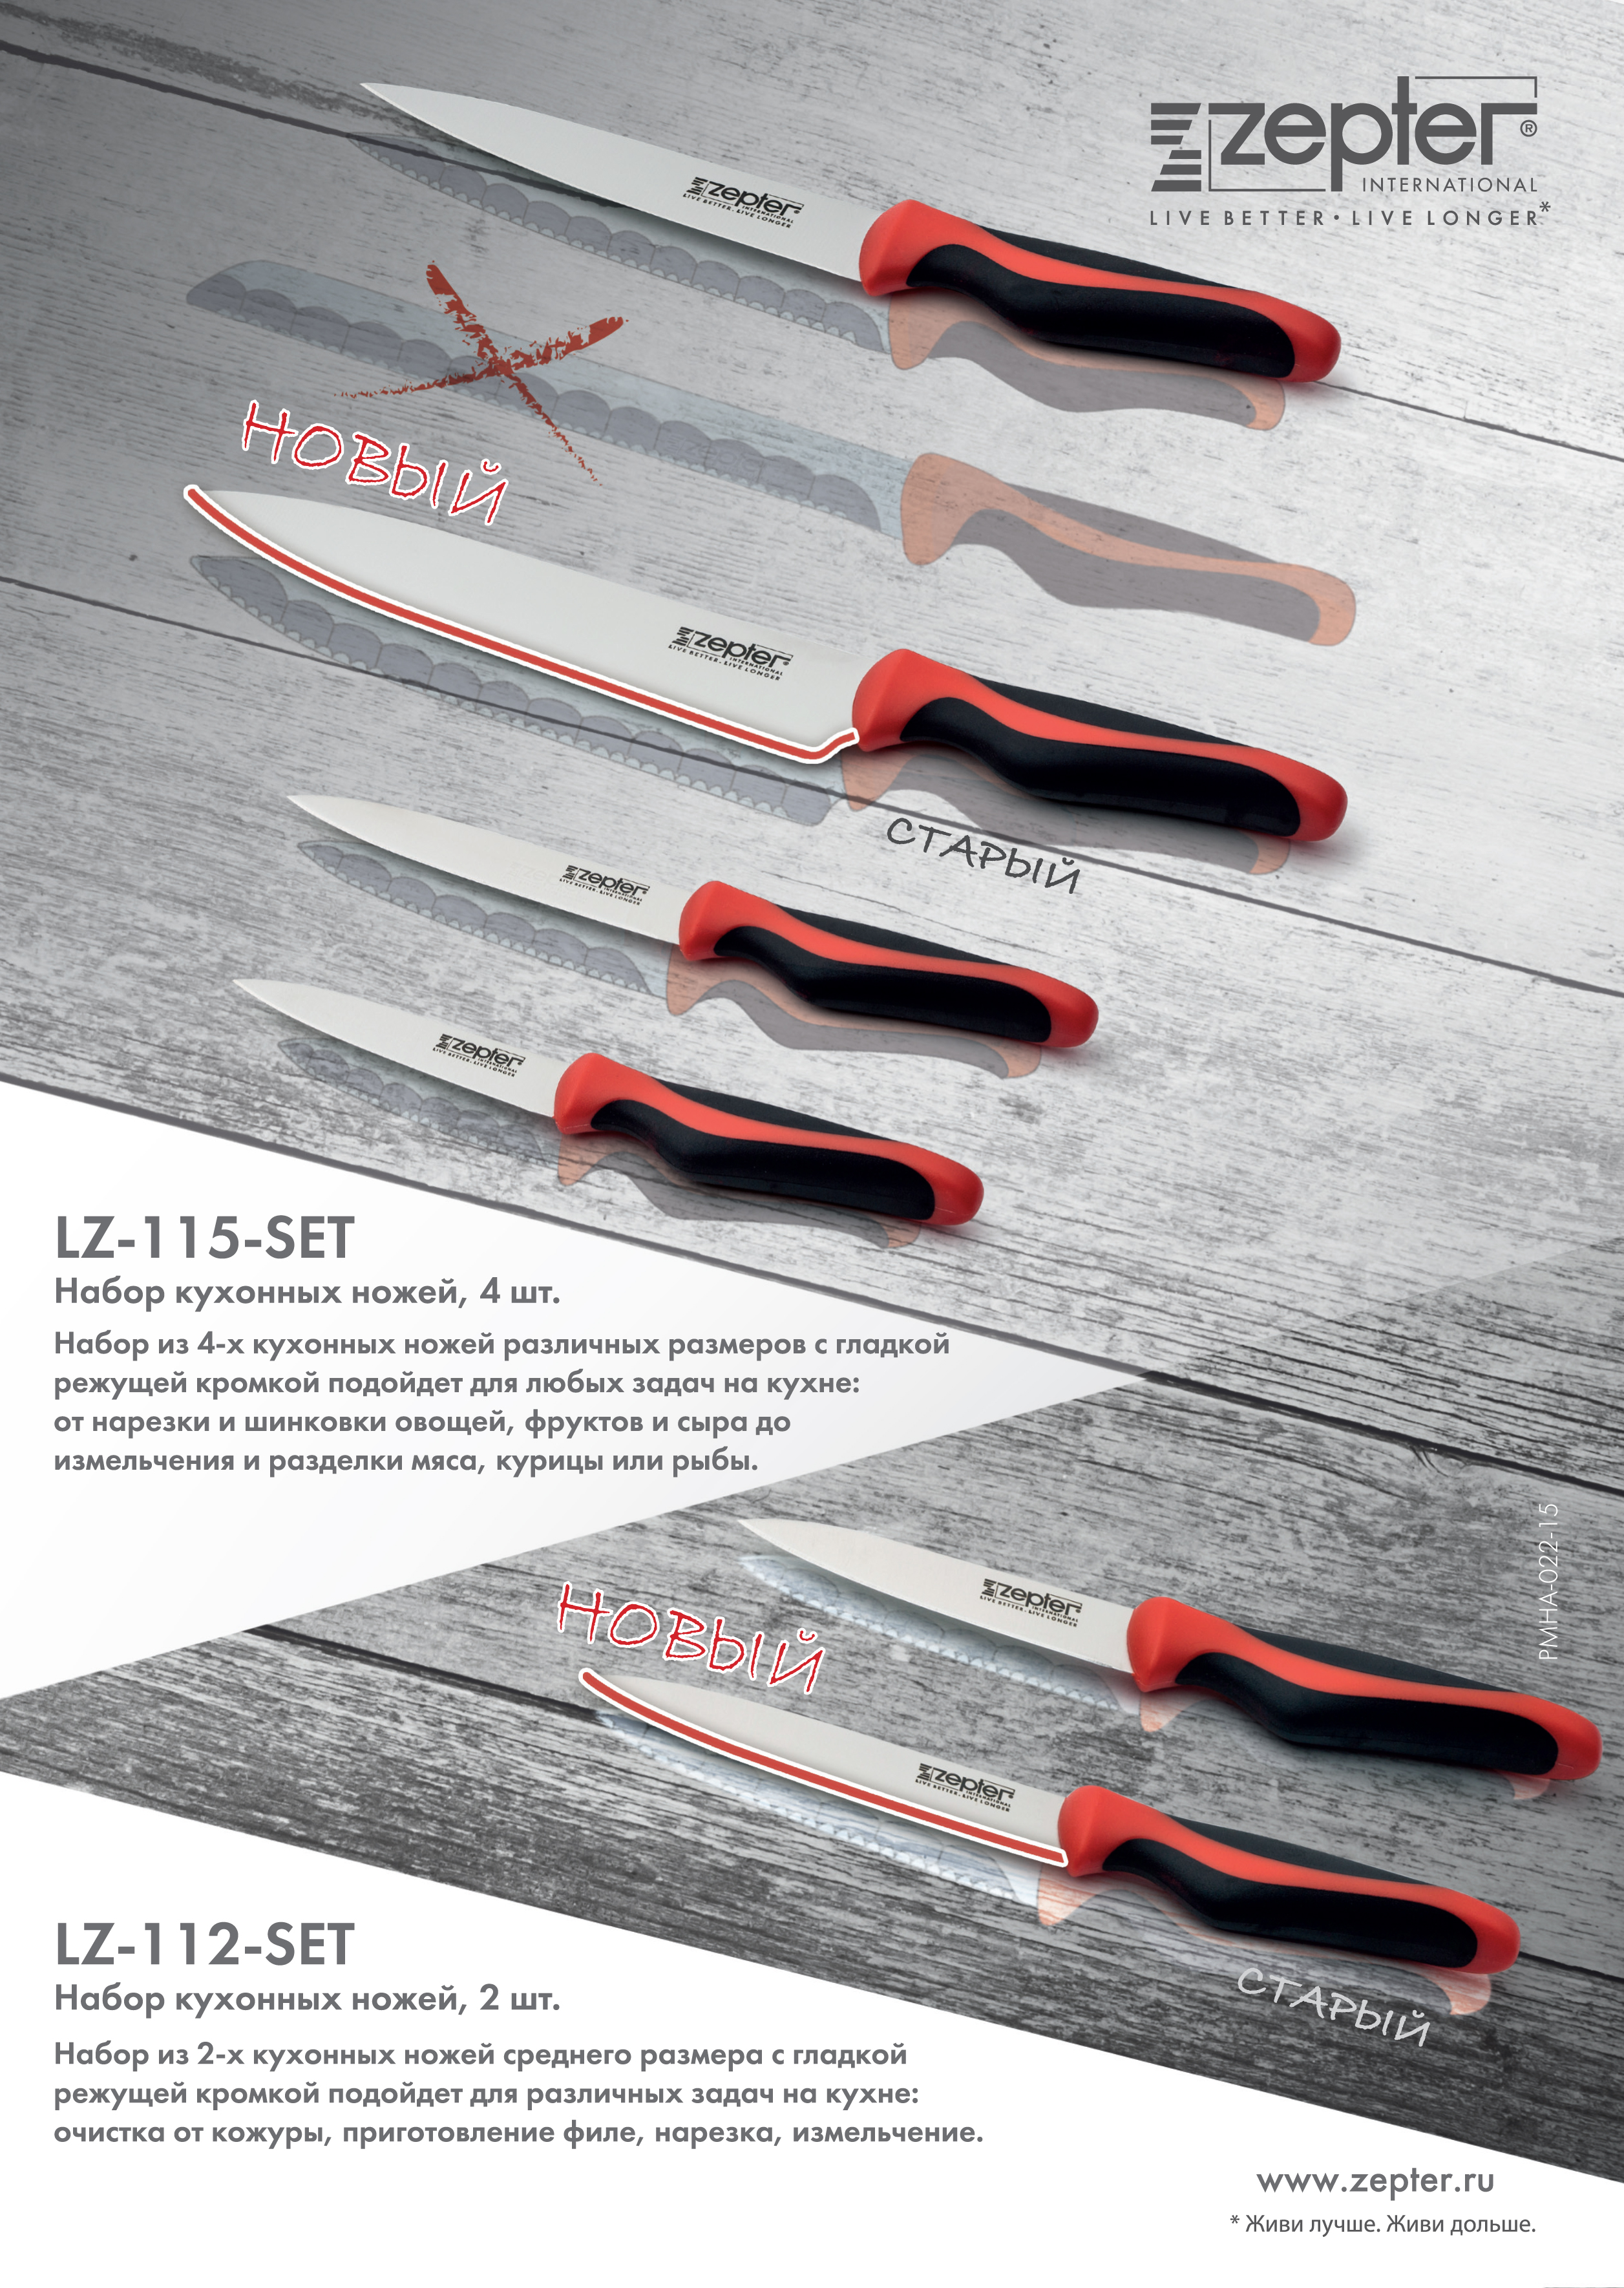 Обновленная коллекция ножей Цептер